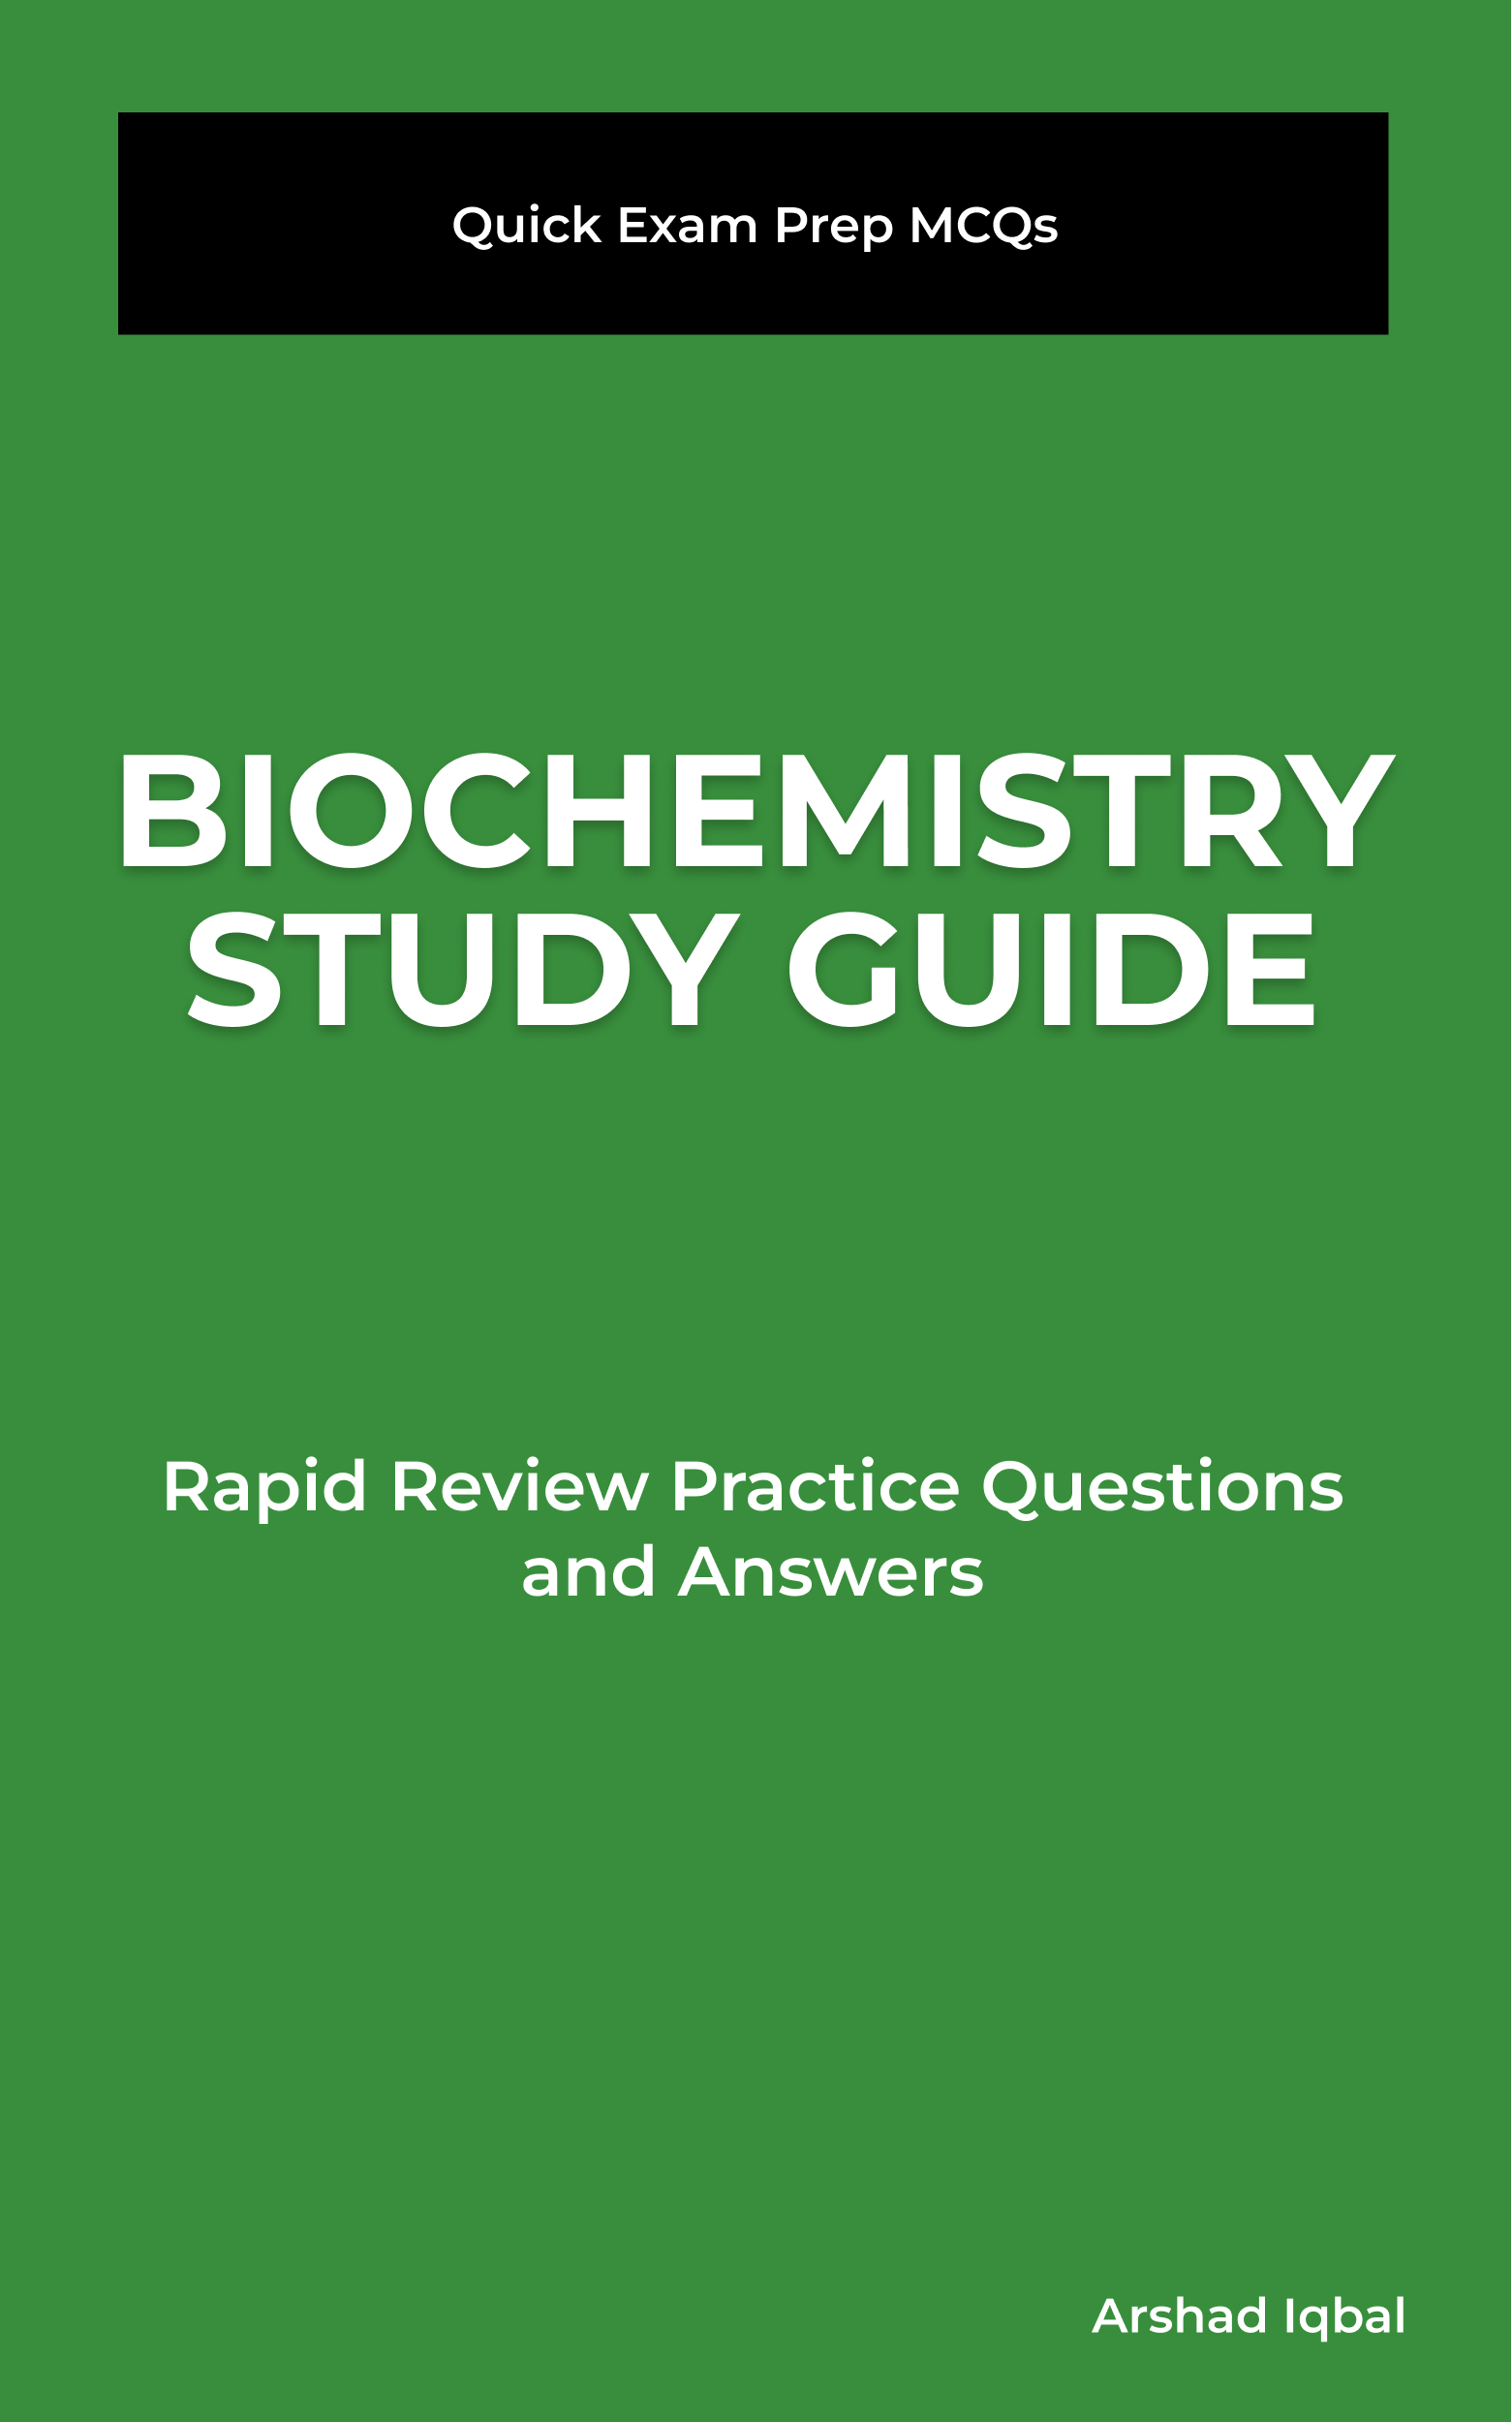 Biochemistry MCQ Book PDF